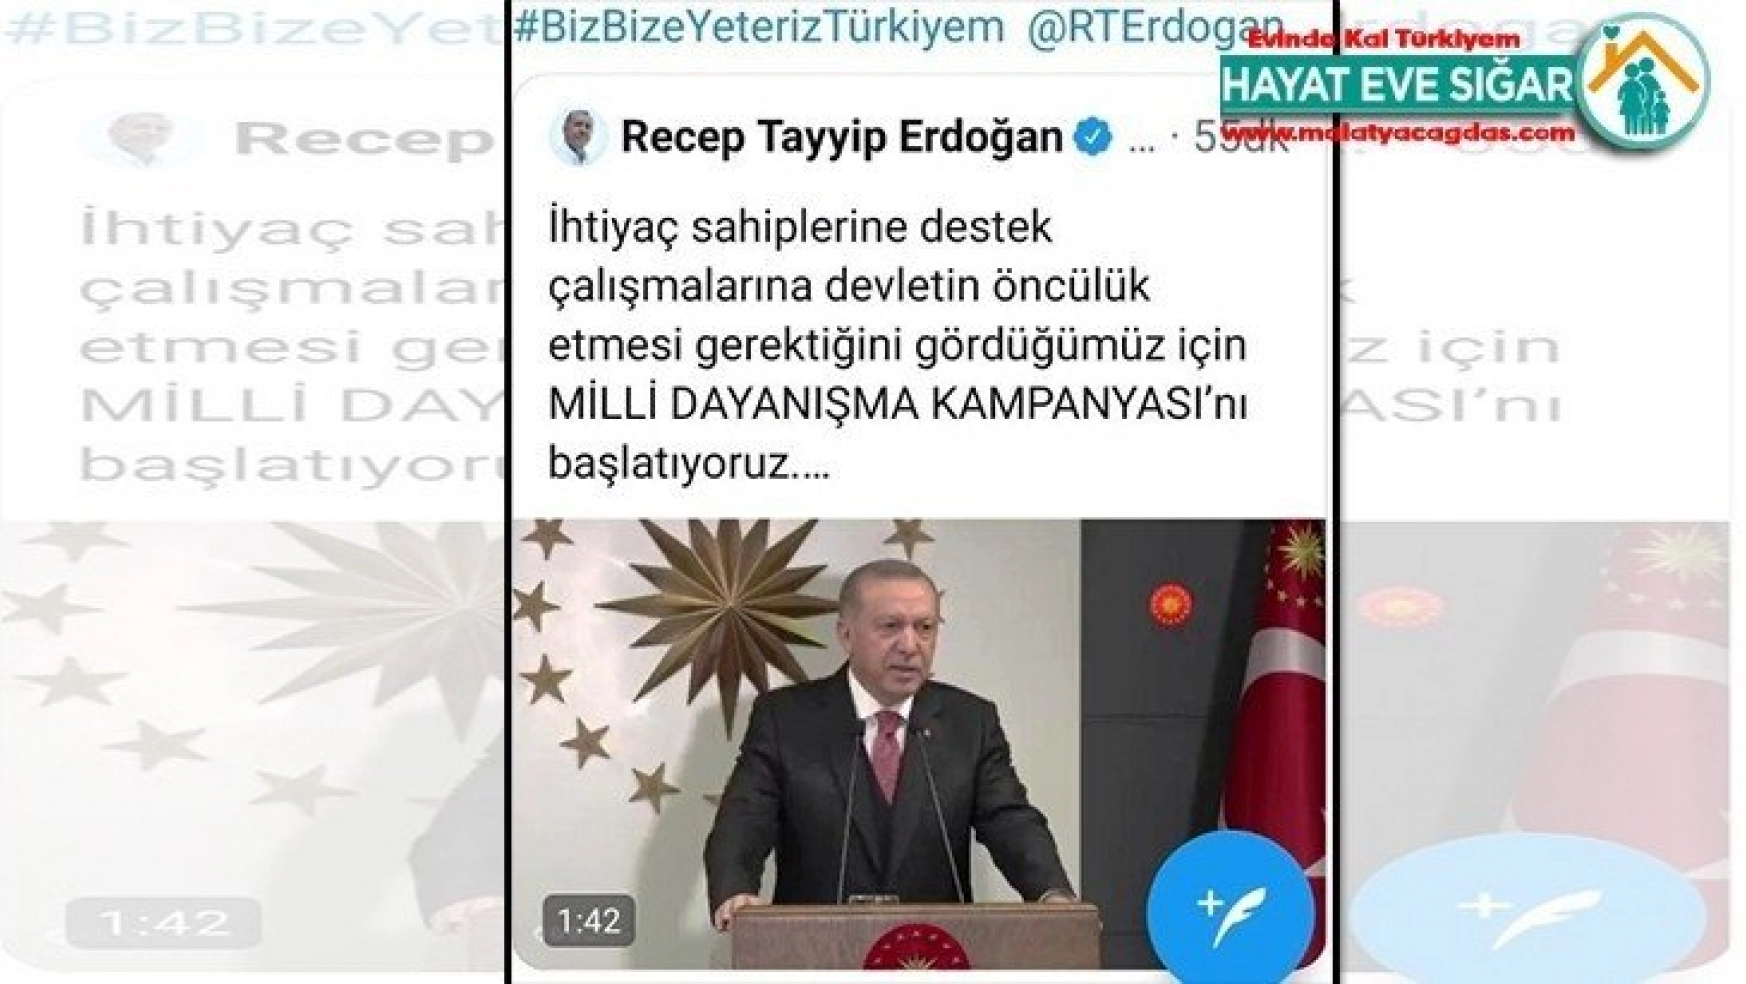 Cumhurbaşkanı Erdoğan'dan 'Biz bize Yeteriz Türkiyem' paylaşımı